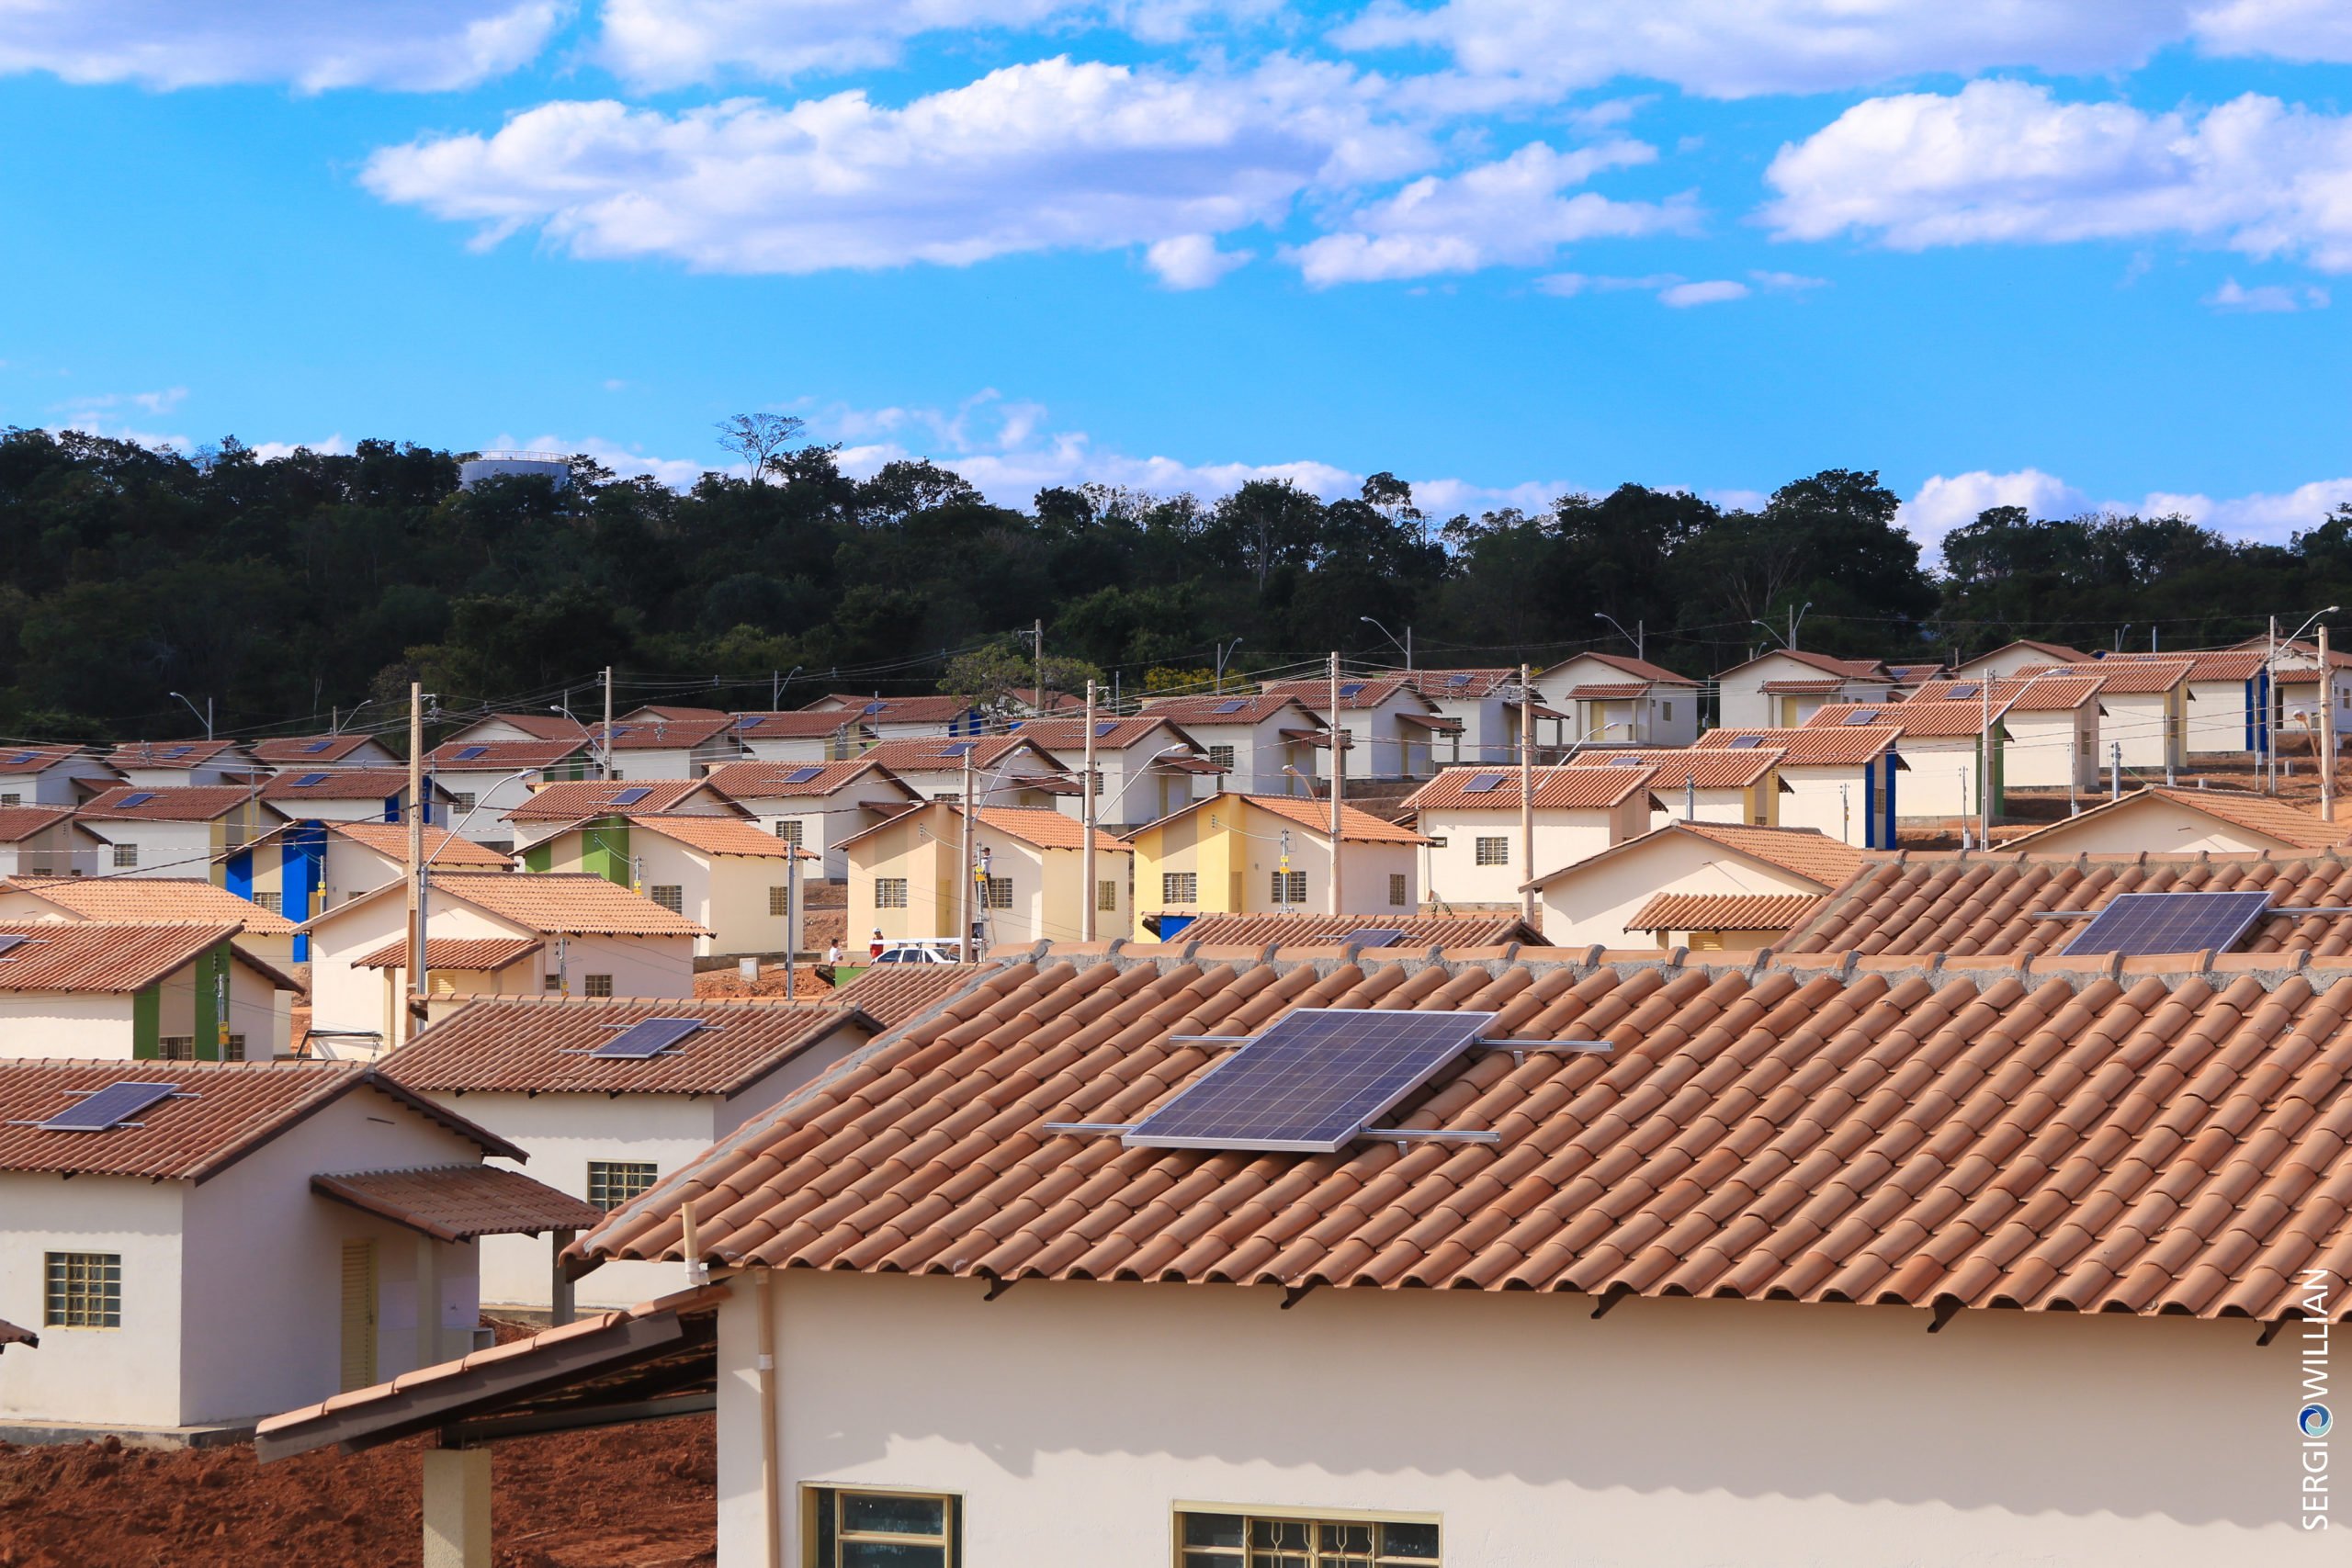 Entenda o que está em jogo na nova lei que prevê painéis solares no Minha Casa Minha Vida. Na imagem: Painéis solares instalados sobre telhados em conjunto habitacional do MCMV (Foto: Willian Agehab/Governo de Goiás)